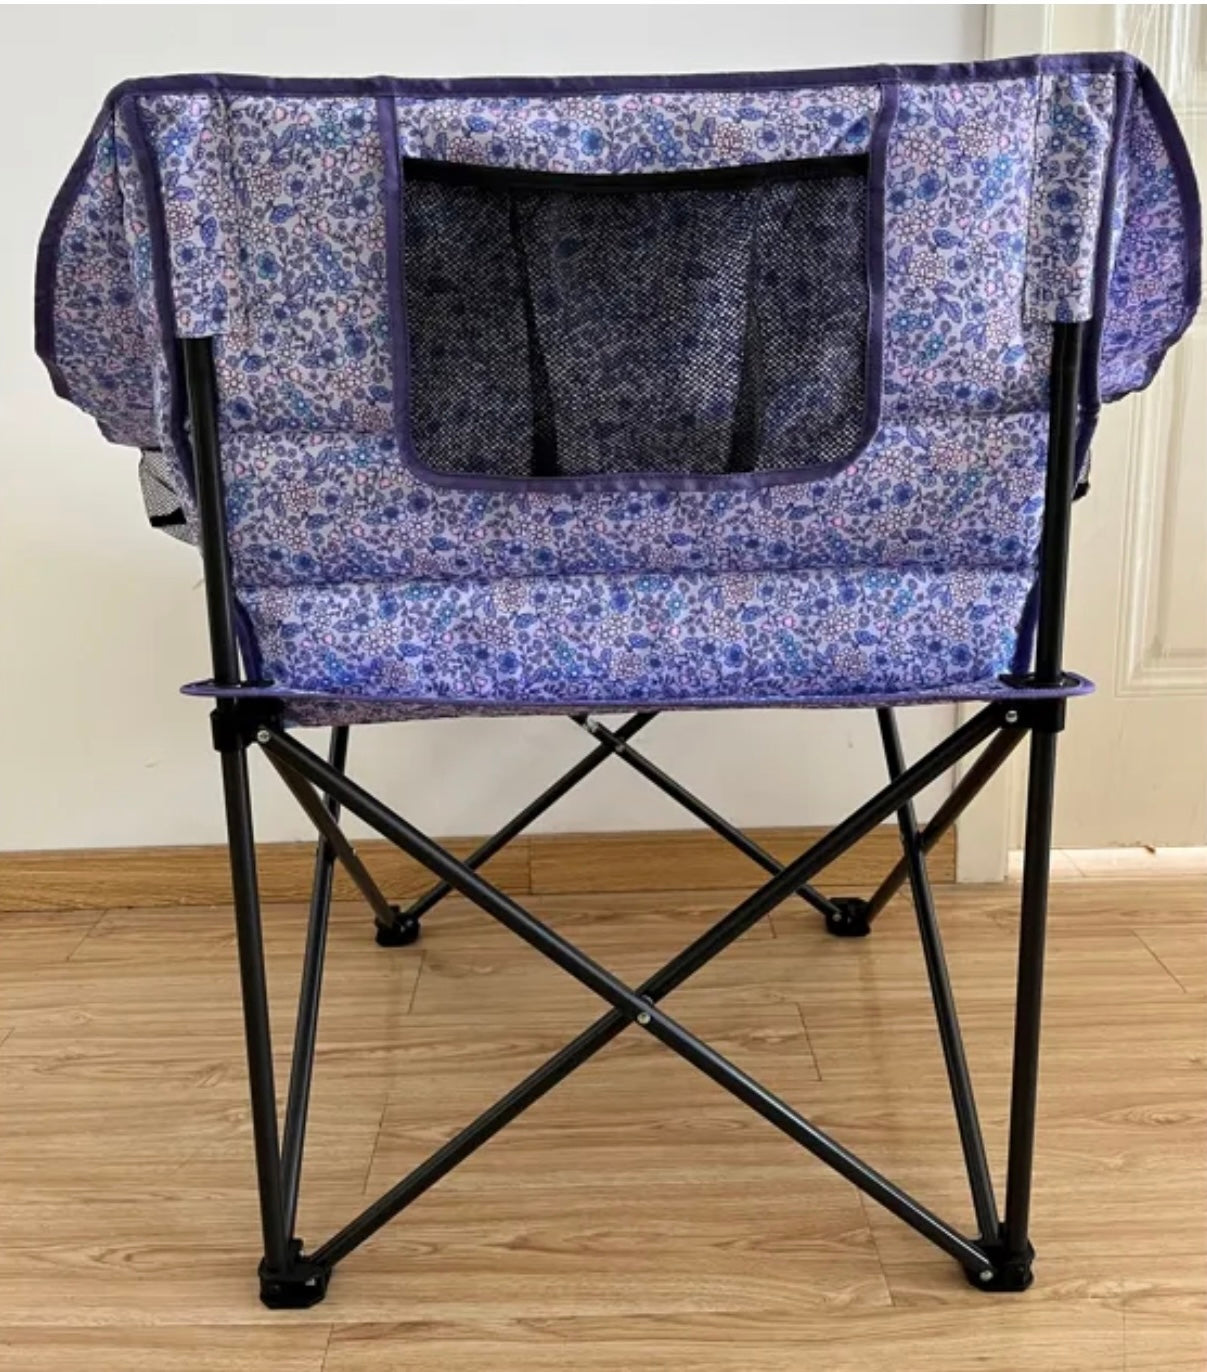 The Clara Camp Chair